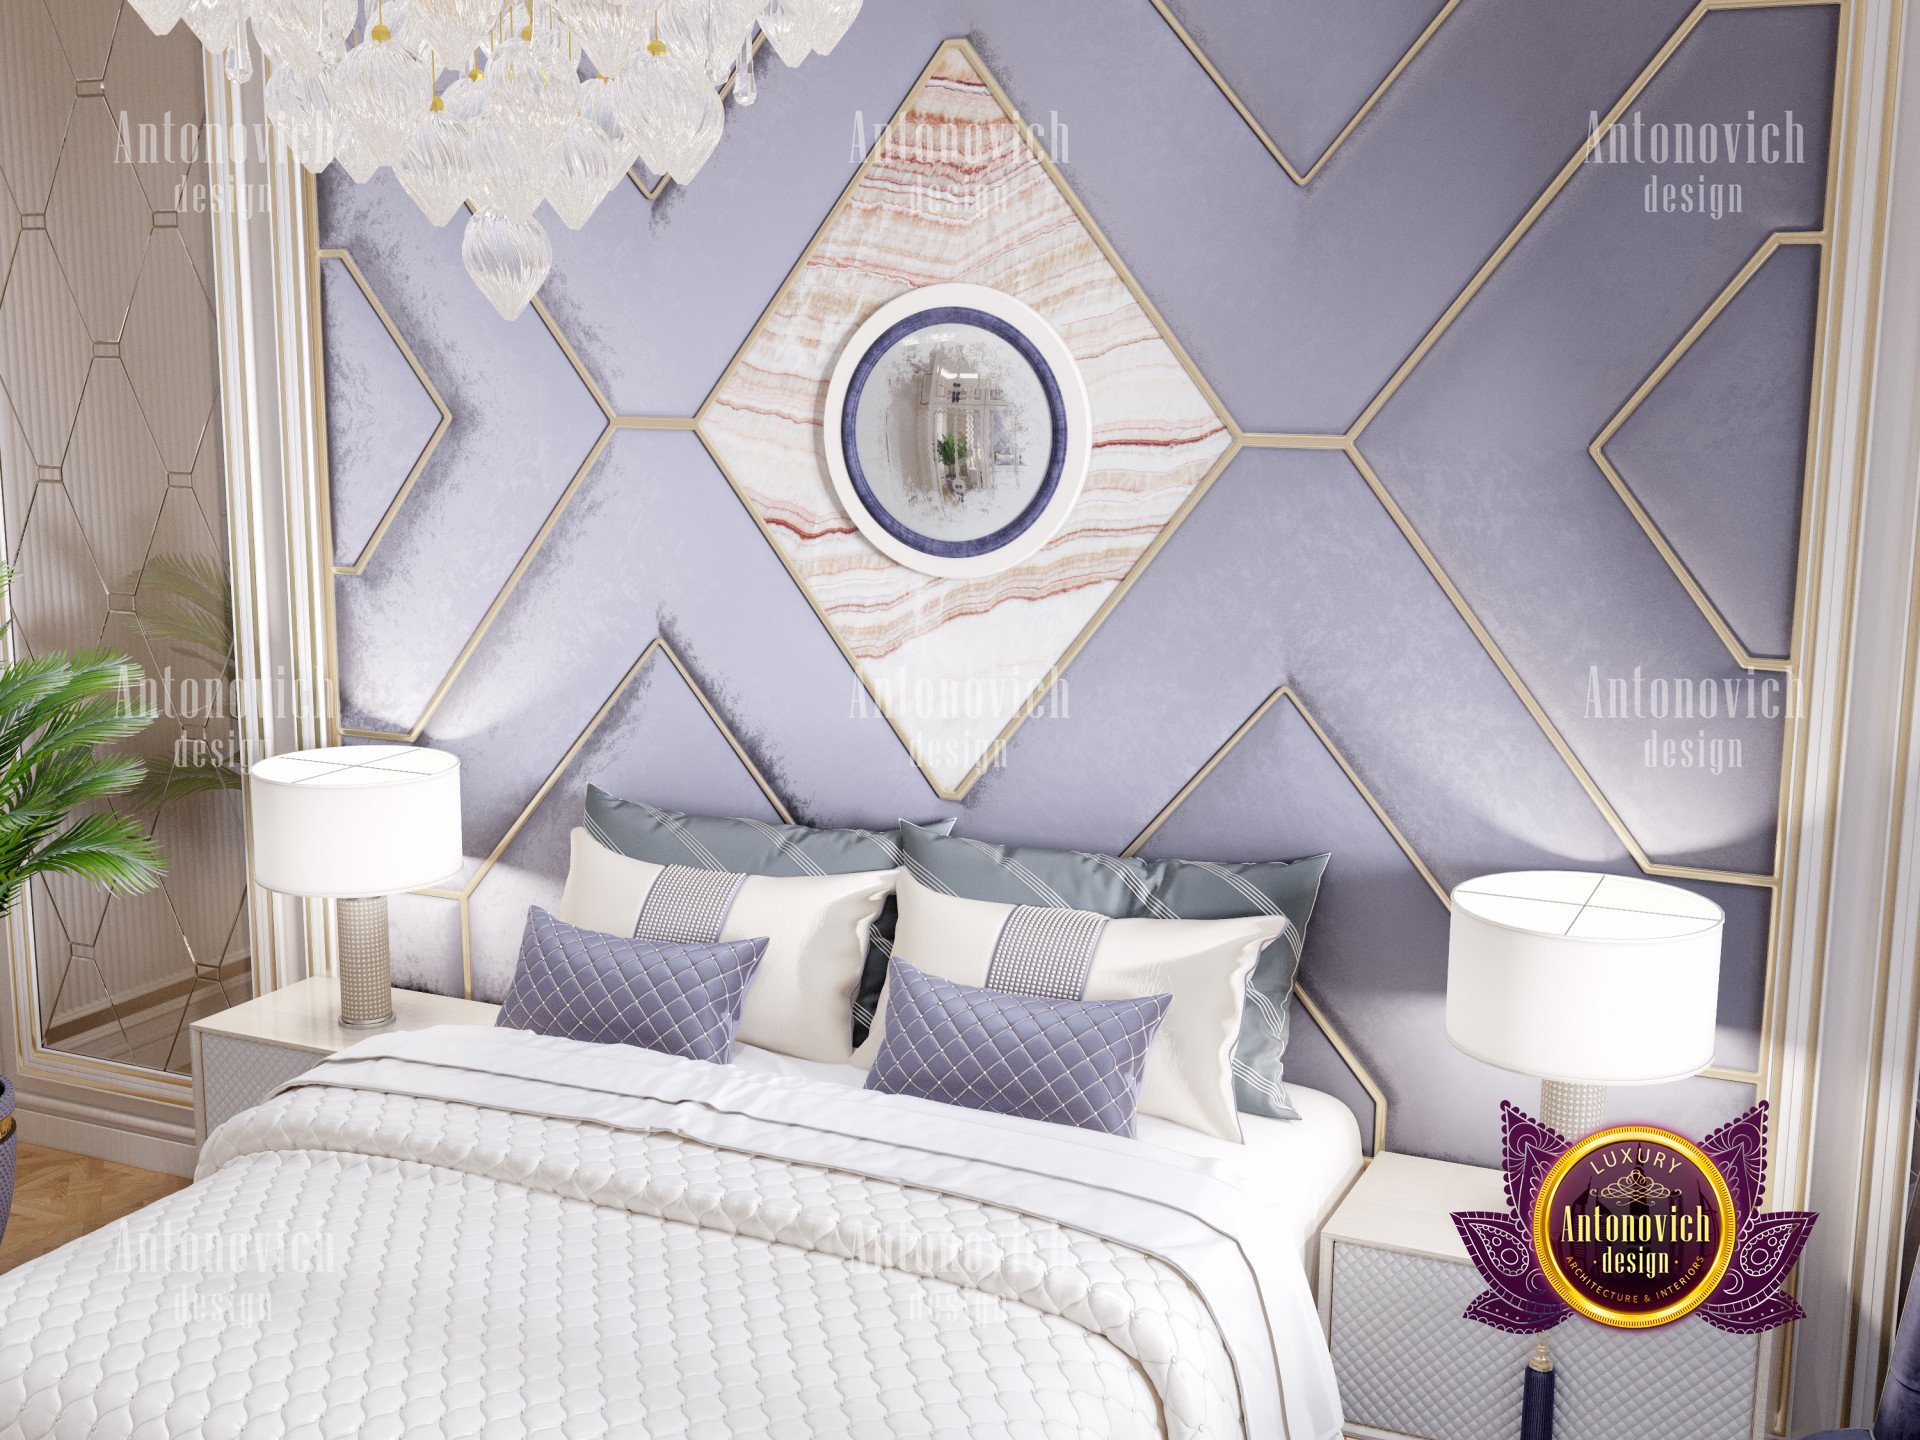 Exquisite Bedroom Design Ideas